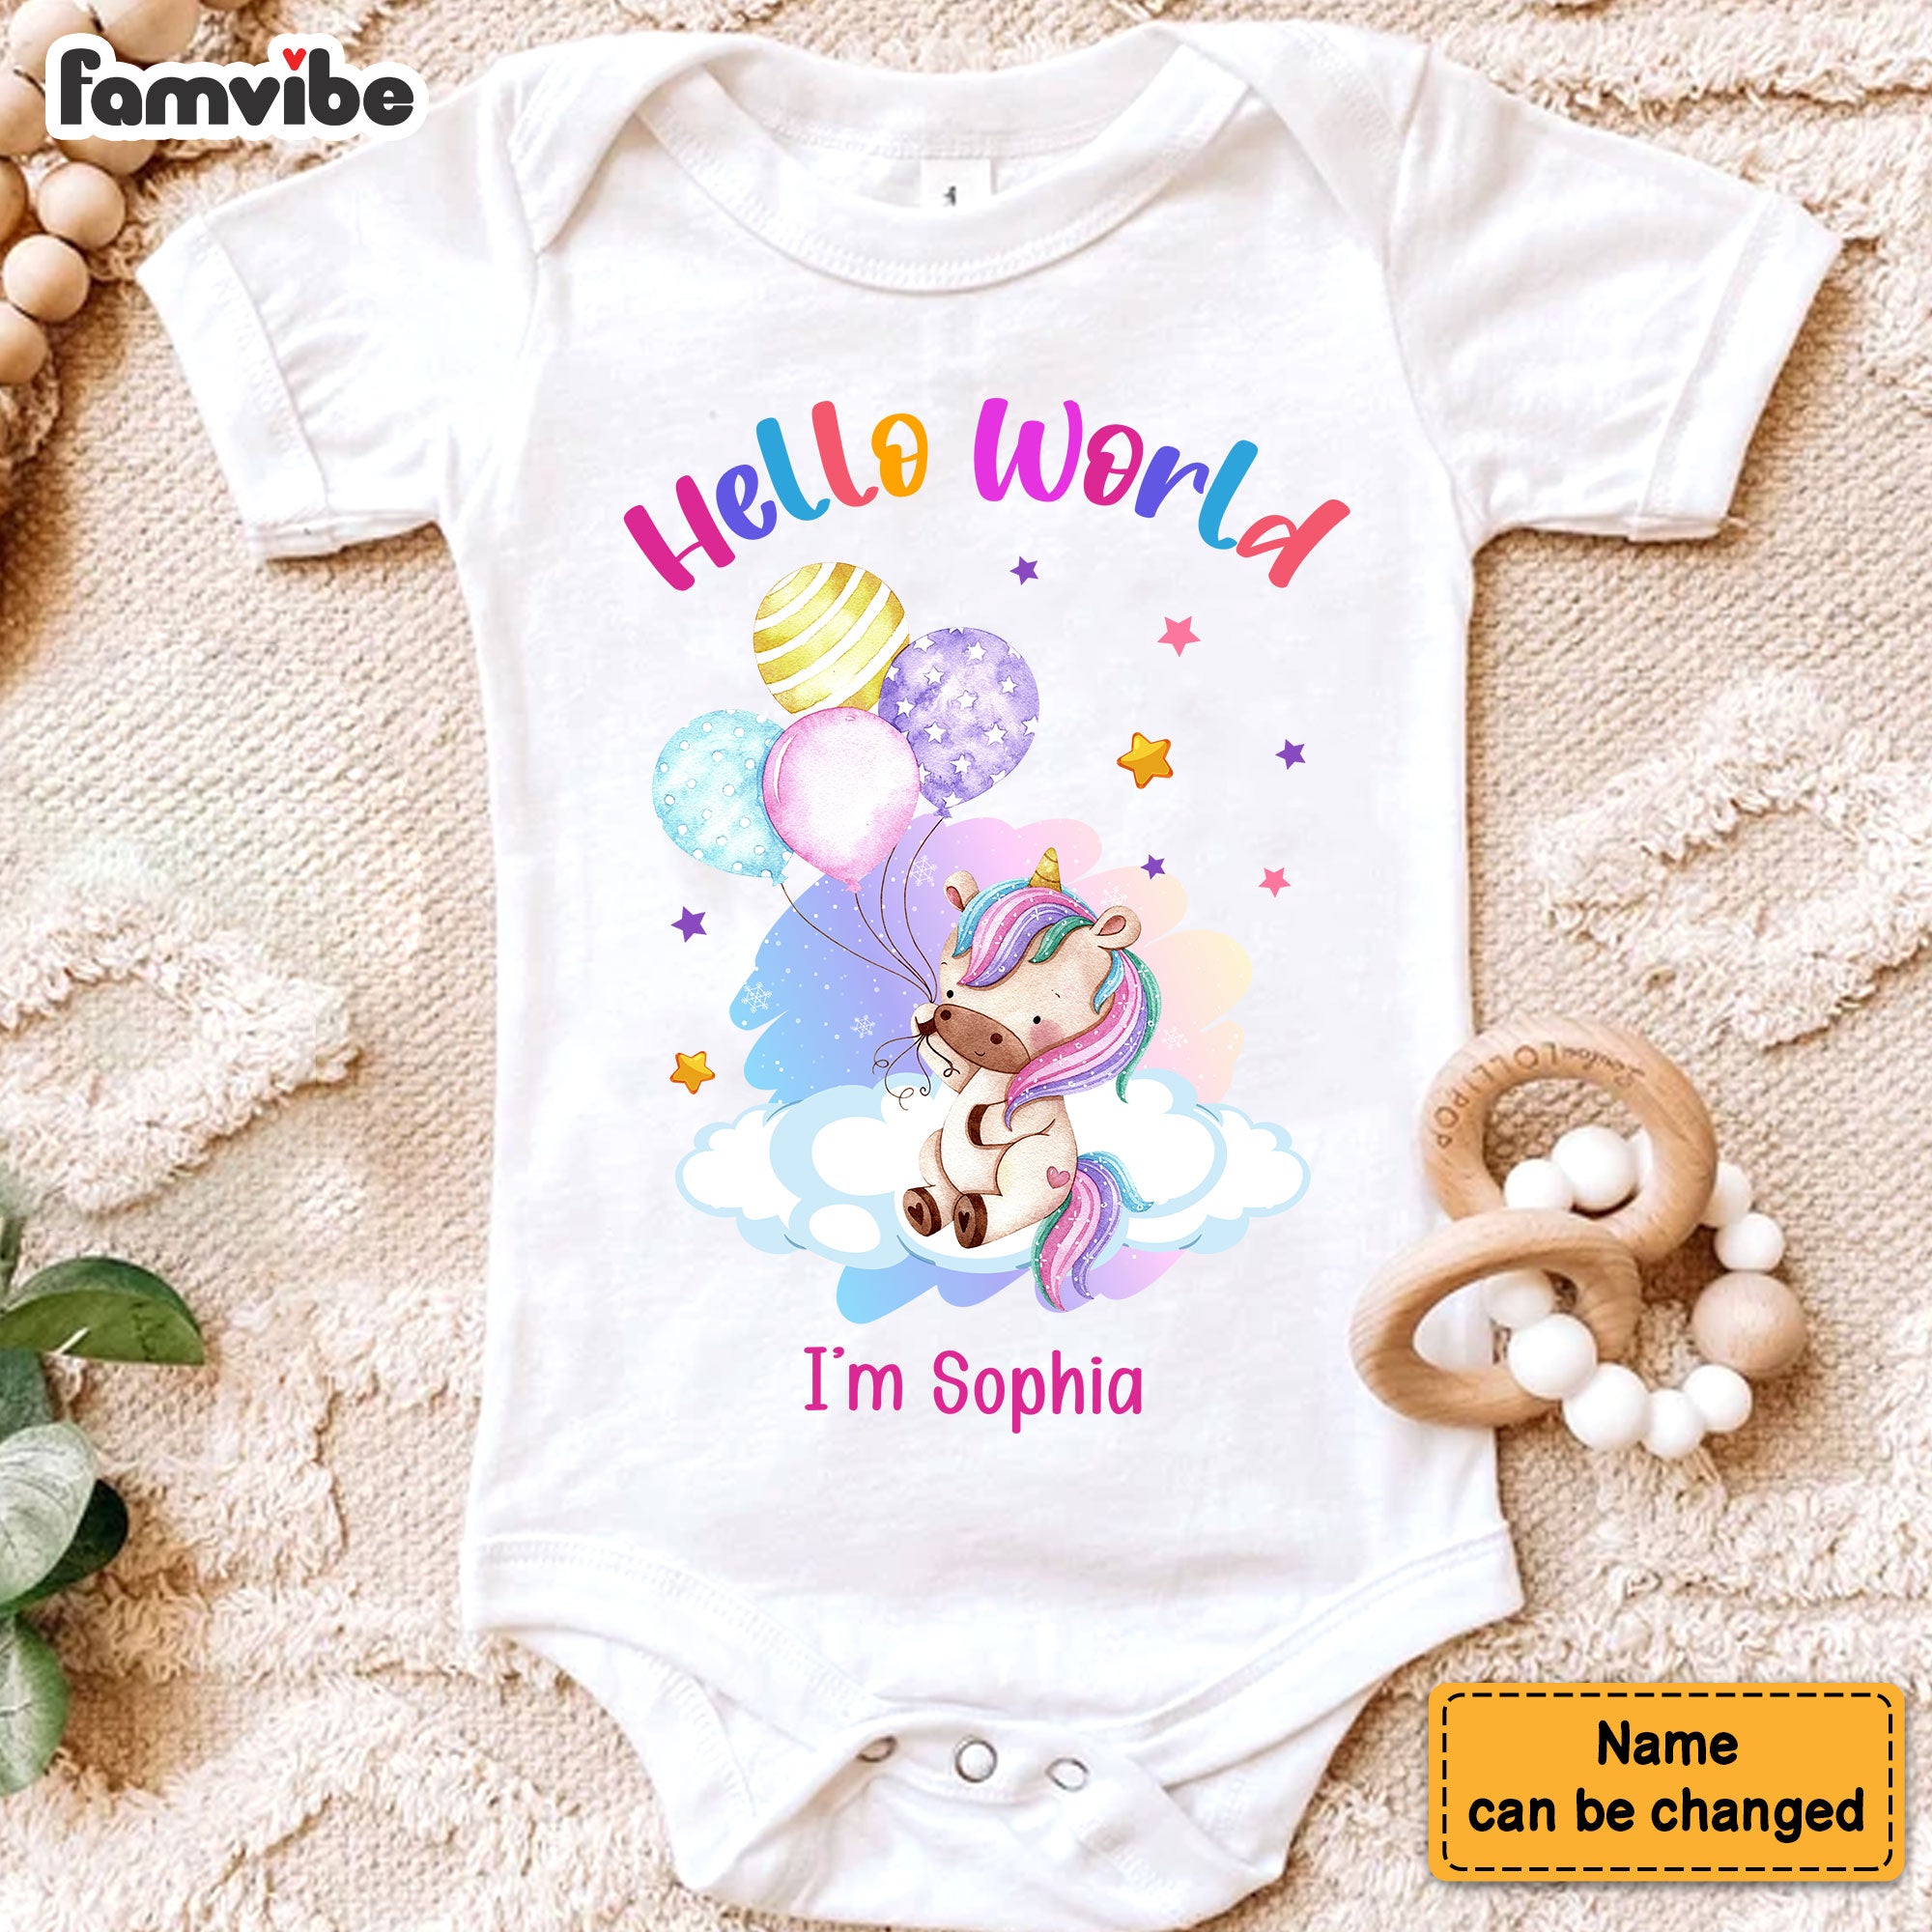 Personalized Newborn Baby Gift Unicorn Hello World Baby Onesie 27803 Primary Mockup